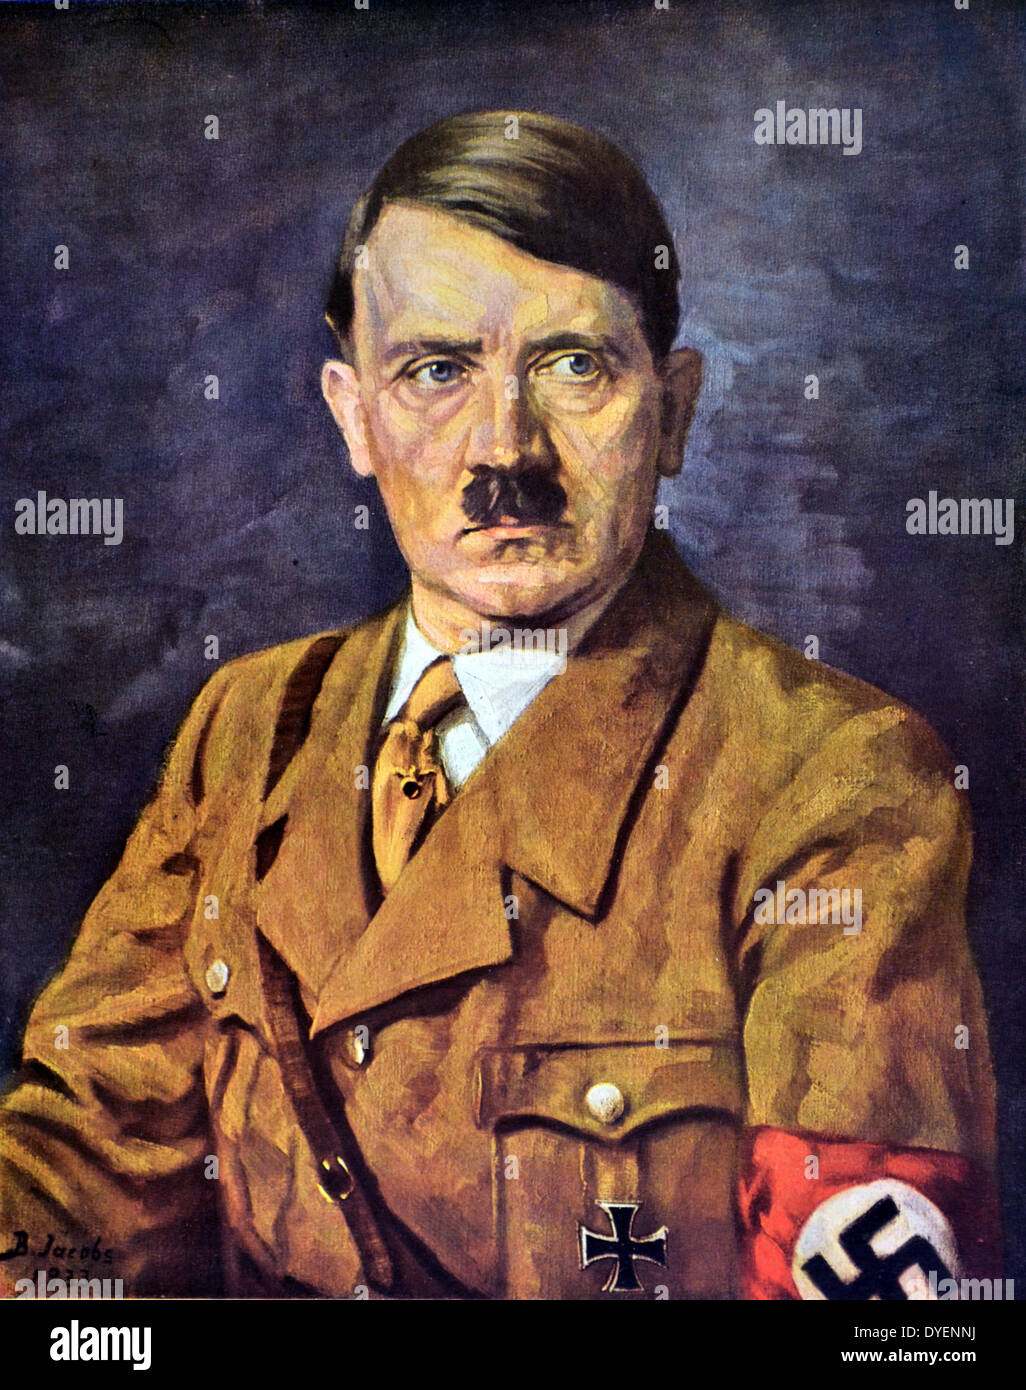 Adolf Hitler Colour Stock Photos Adolf Hitler Colour Stock Images, Photos, Reviews